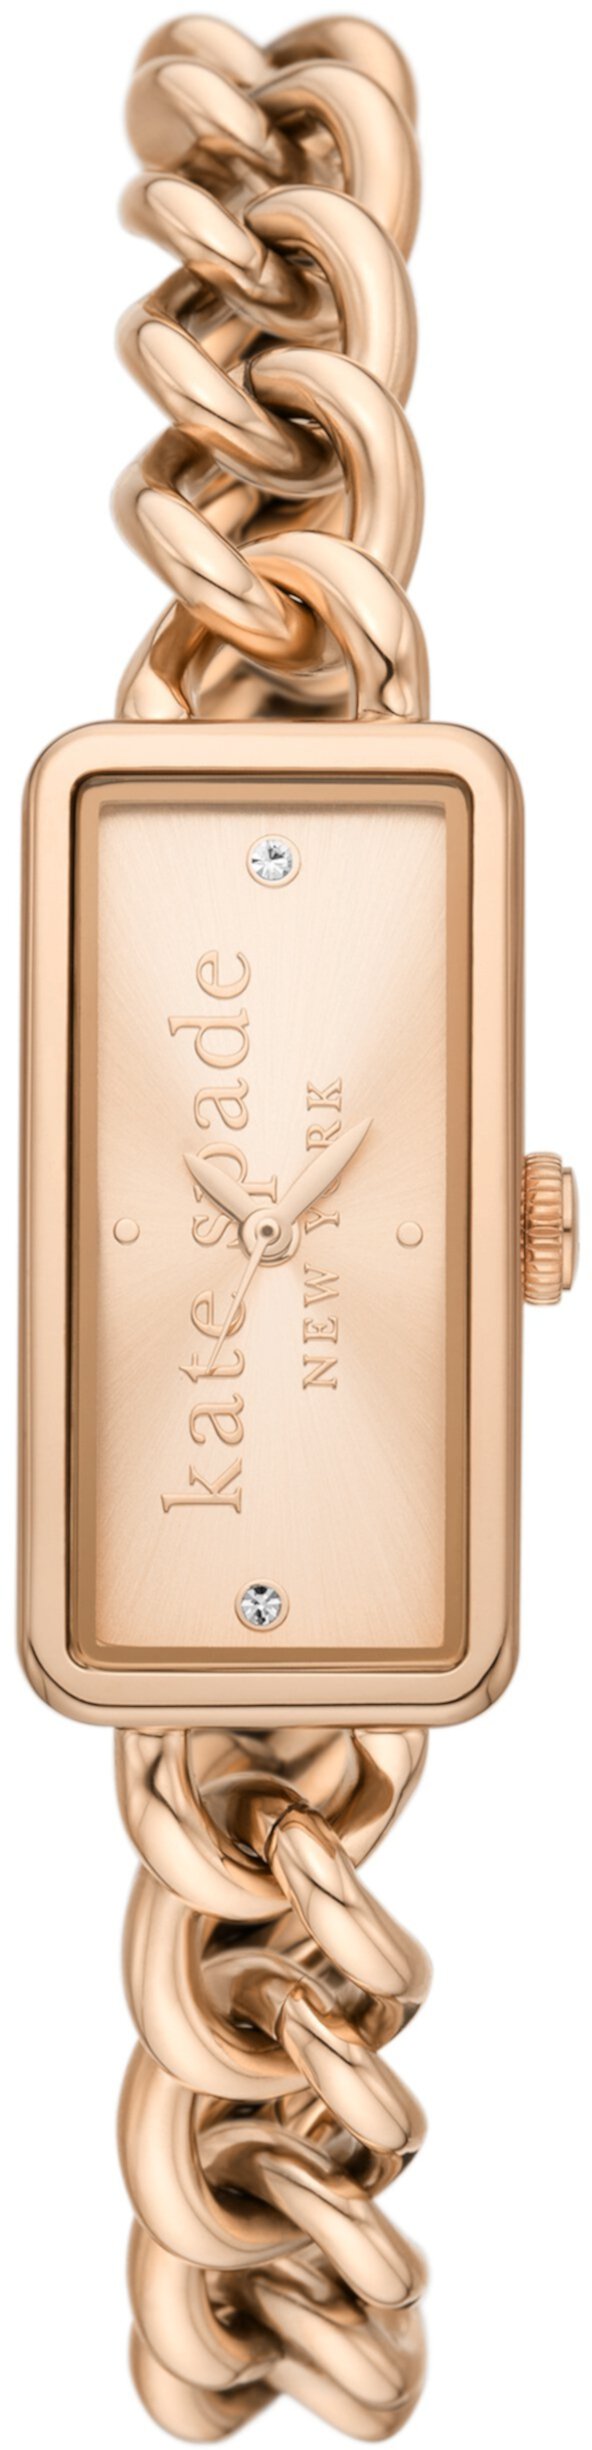 Часы Rosedale с тремя стрелками из нержавеющей стали с оттенком розового золота — KSW1810 Kate Spade New York